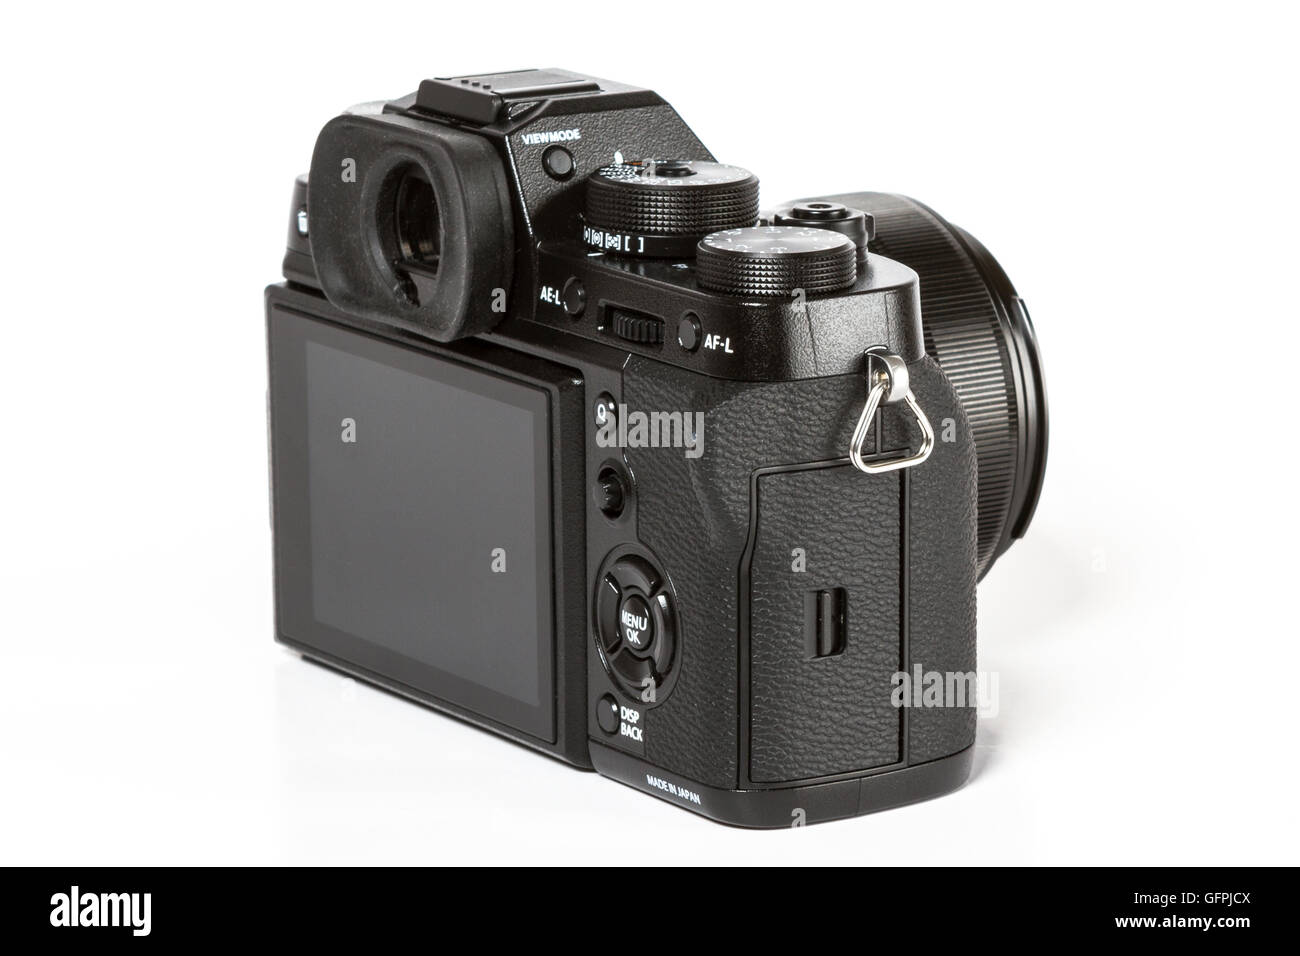 FUJIFILM X-T2, 24 mégapixels, vidéo 4K de l'arrière de l'appareil photo mirrorless sur fond blanc Banque D'Images